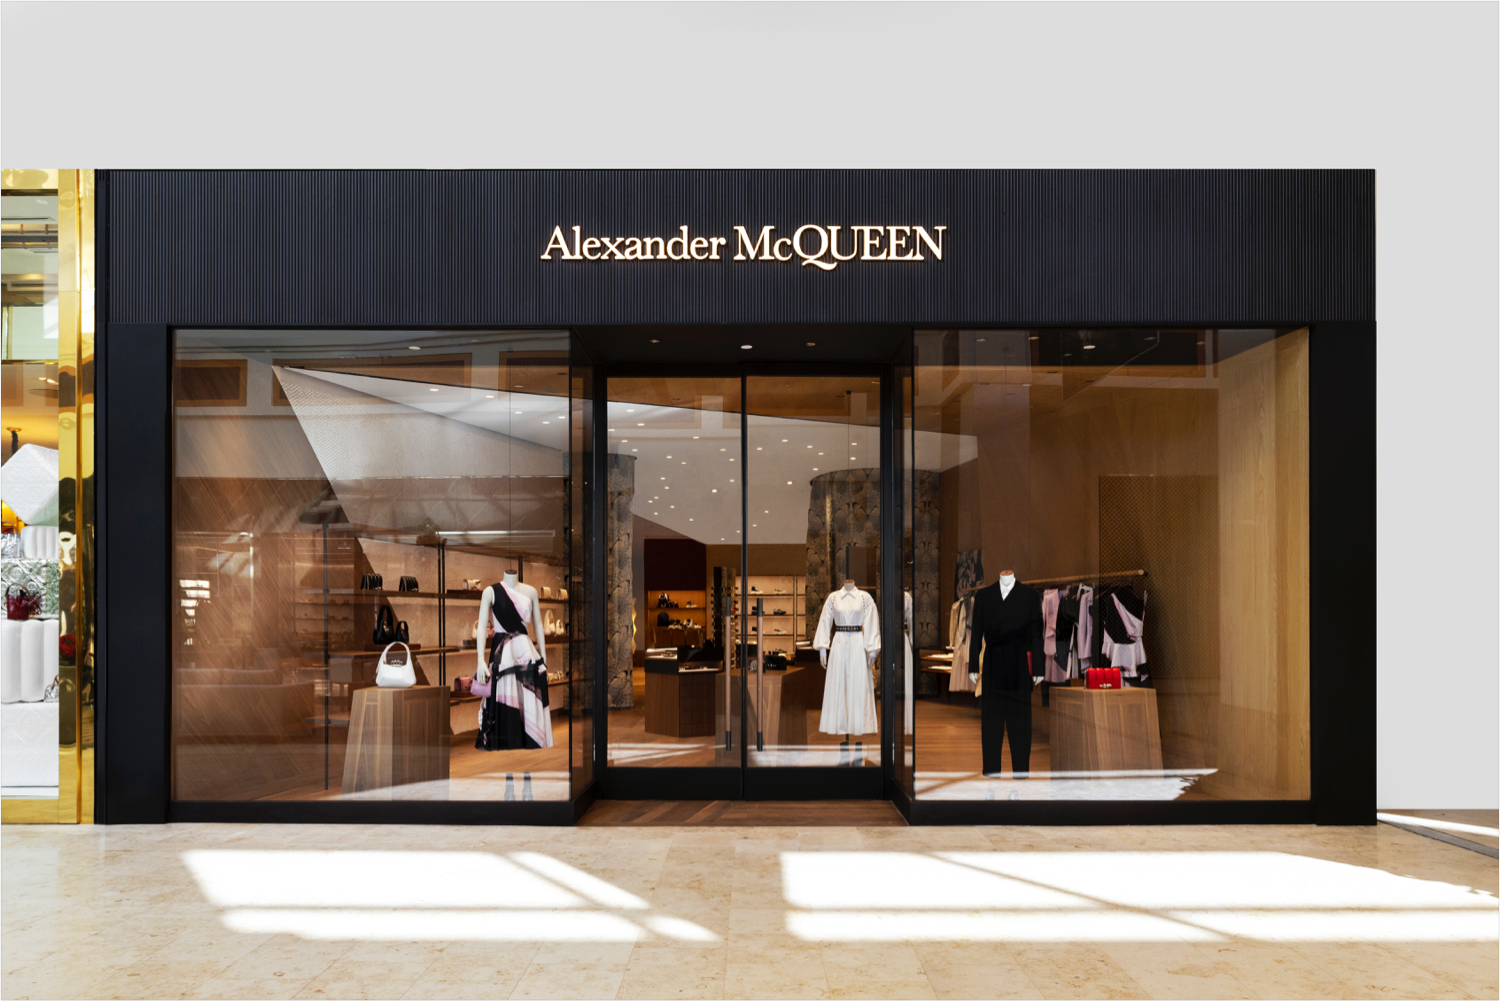 Alexander McQueen Store Window in New York City Editorial